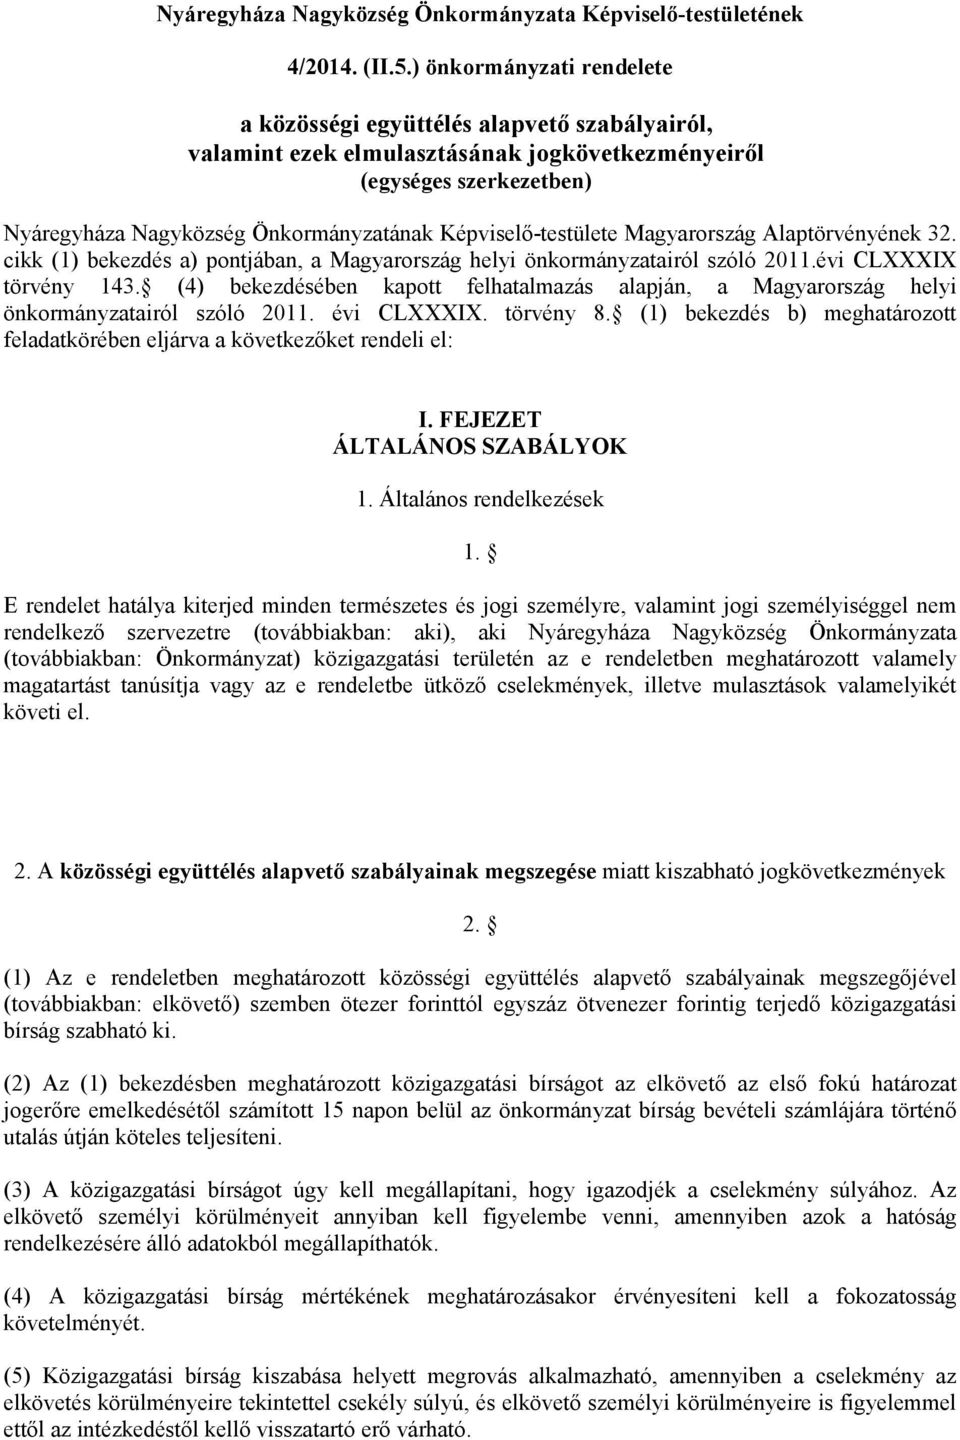 Képviselő-testülete Magyarország Alaptörvényének 32. cikk (1) bekezdés a) pontjában, a Magyarország helyi önkormányzatairól szóló 2011.évi CLXXXIX törvény 143.